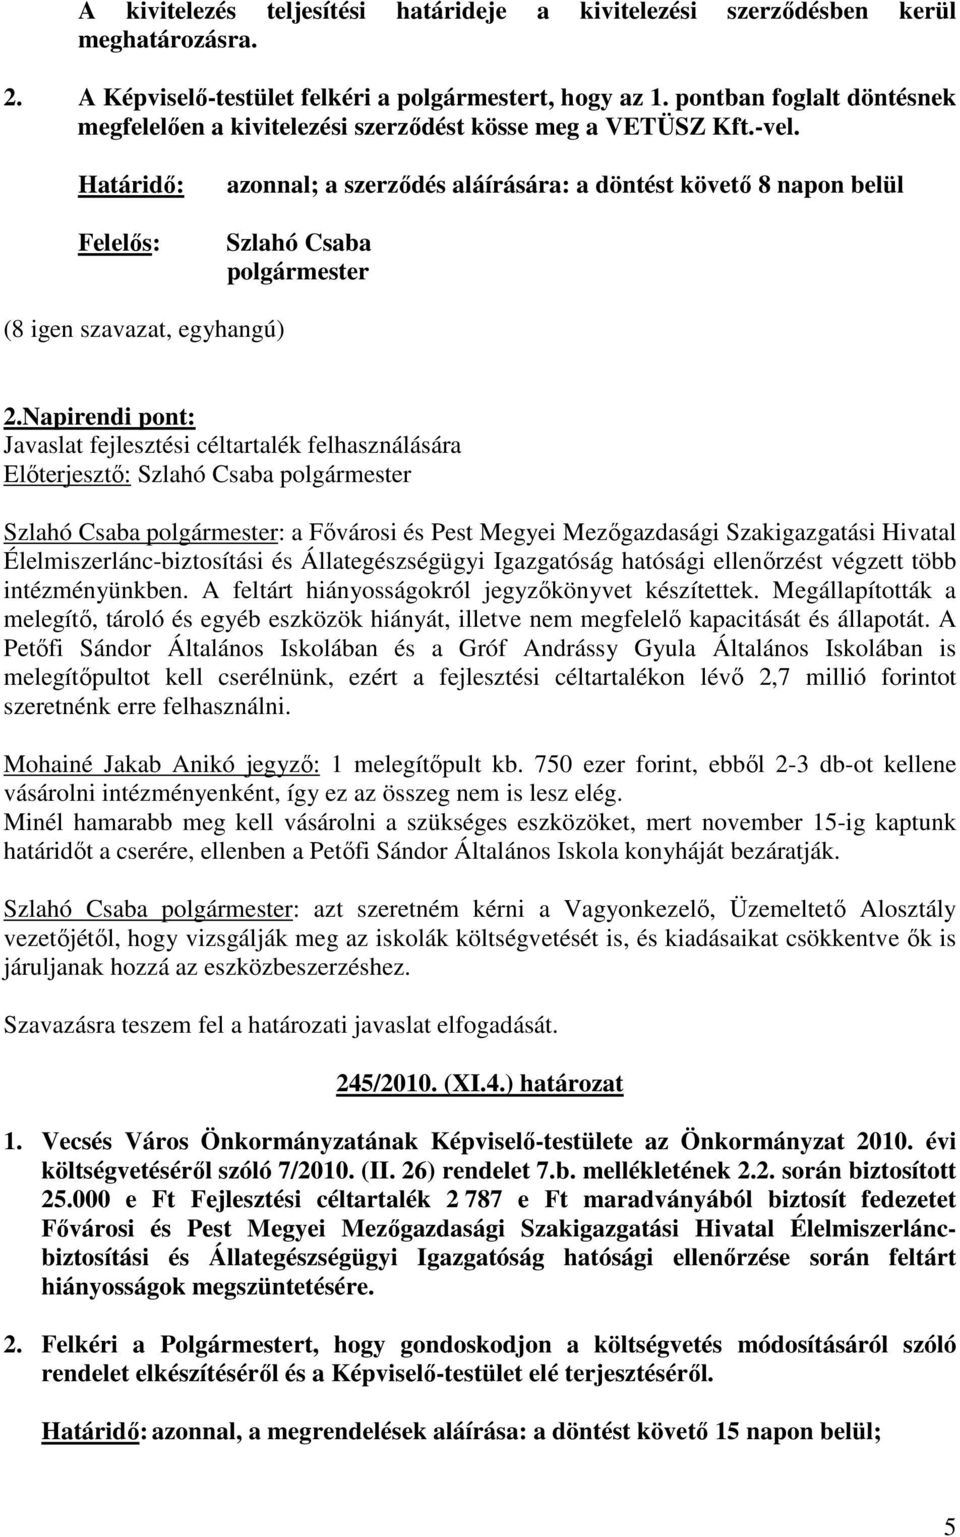 Napirendi pont: Javaslat fejlesztési céltartalék felhasználására : a Fıvárosi és Pest Megyei Mezıgazdasági Szakigazgatási Hivatal Élelmiszerlánc-biztosítási és Állategészségügyi Igazgatóság hatósági